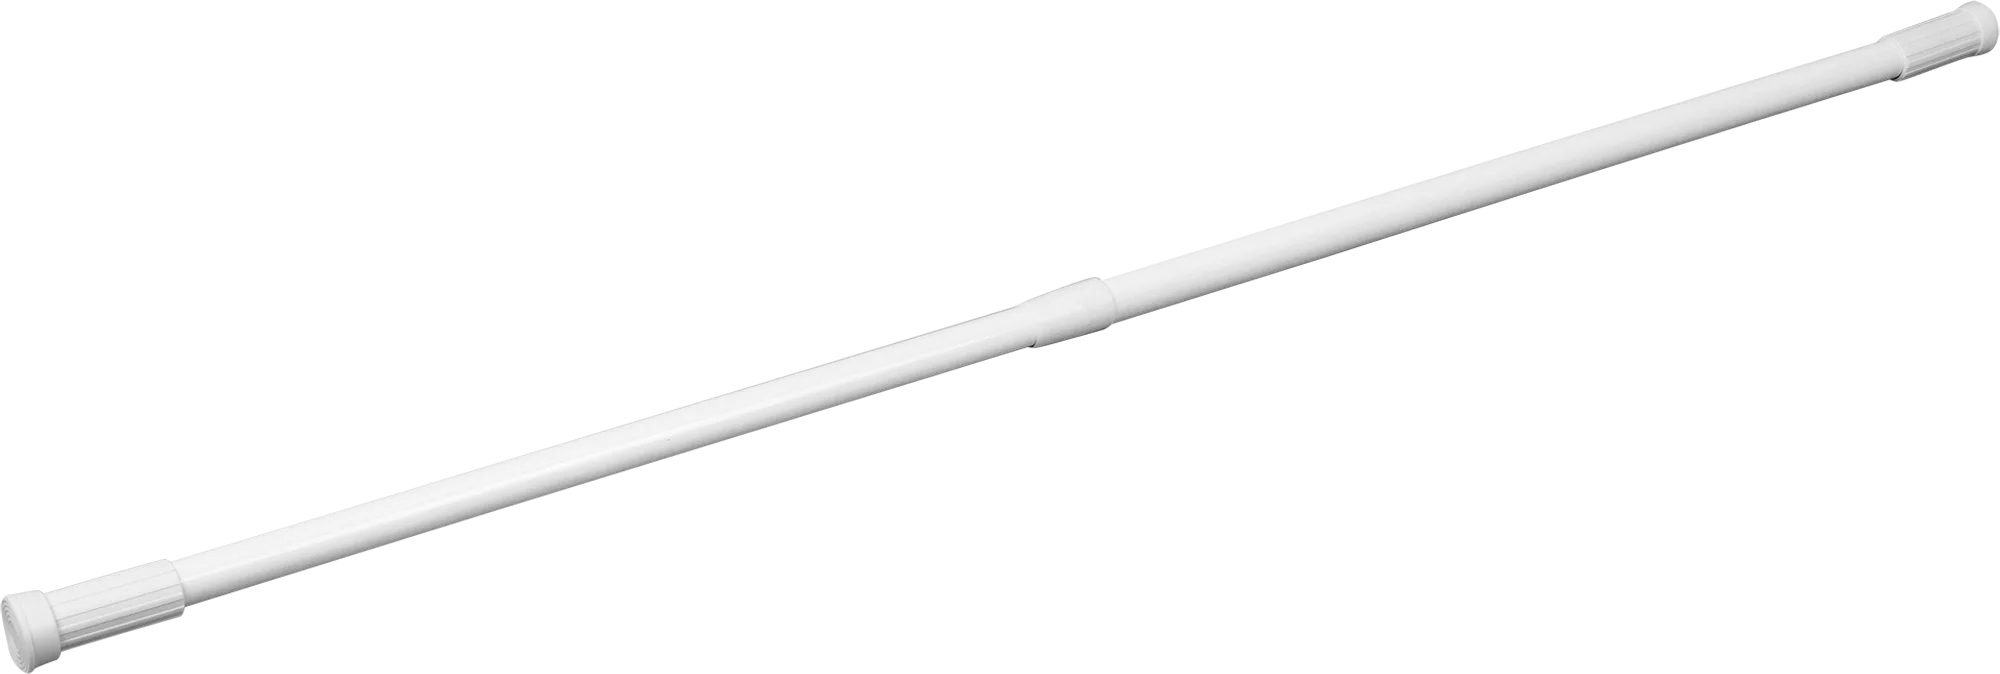 Карниз для ванной Vidage, телескопический, цвет: белый, длина 70-120 см